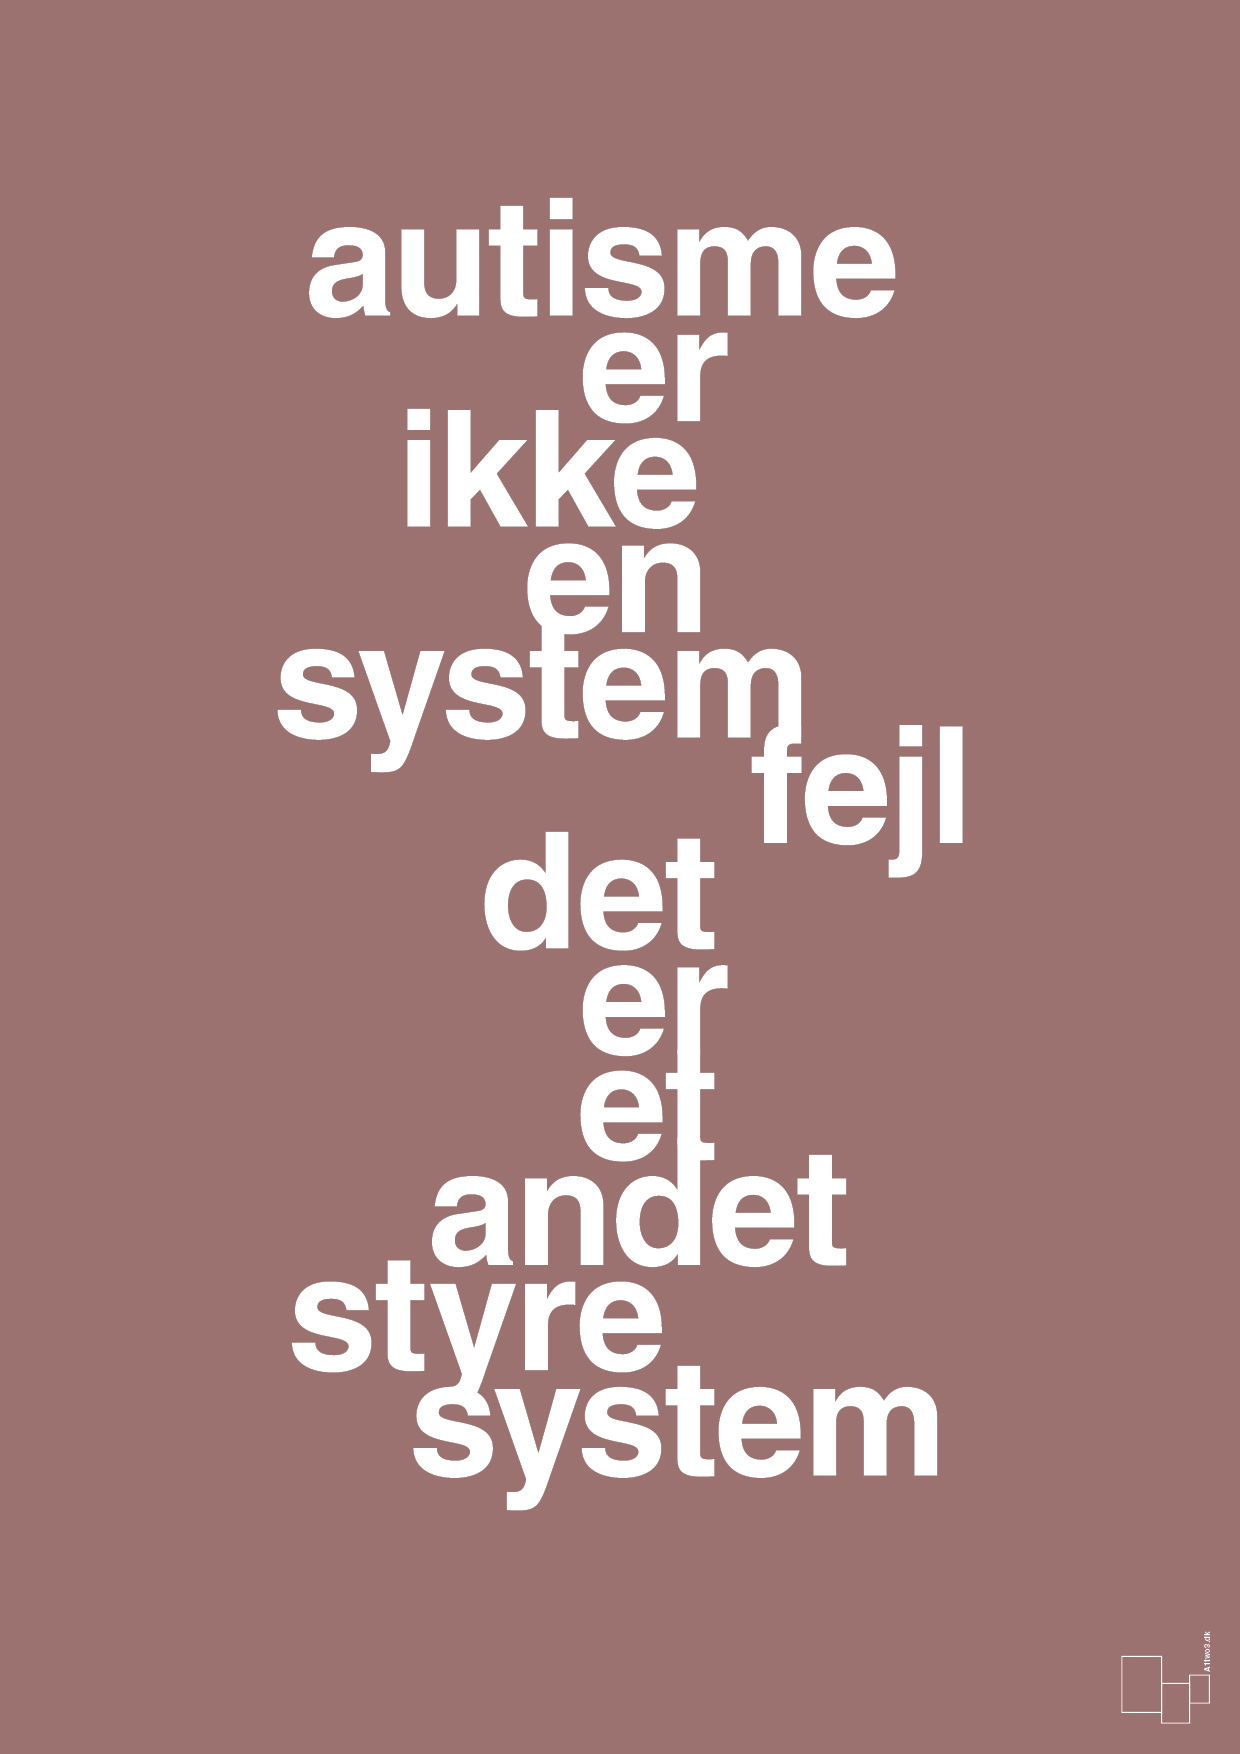 autisme er ikke en systemfejl - Plakat med Samfund i Plum